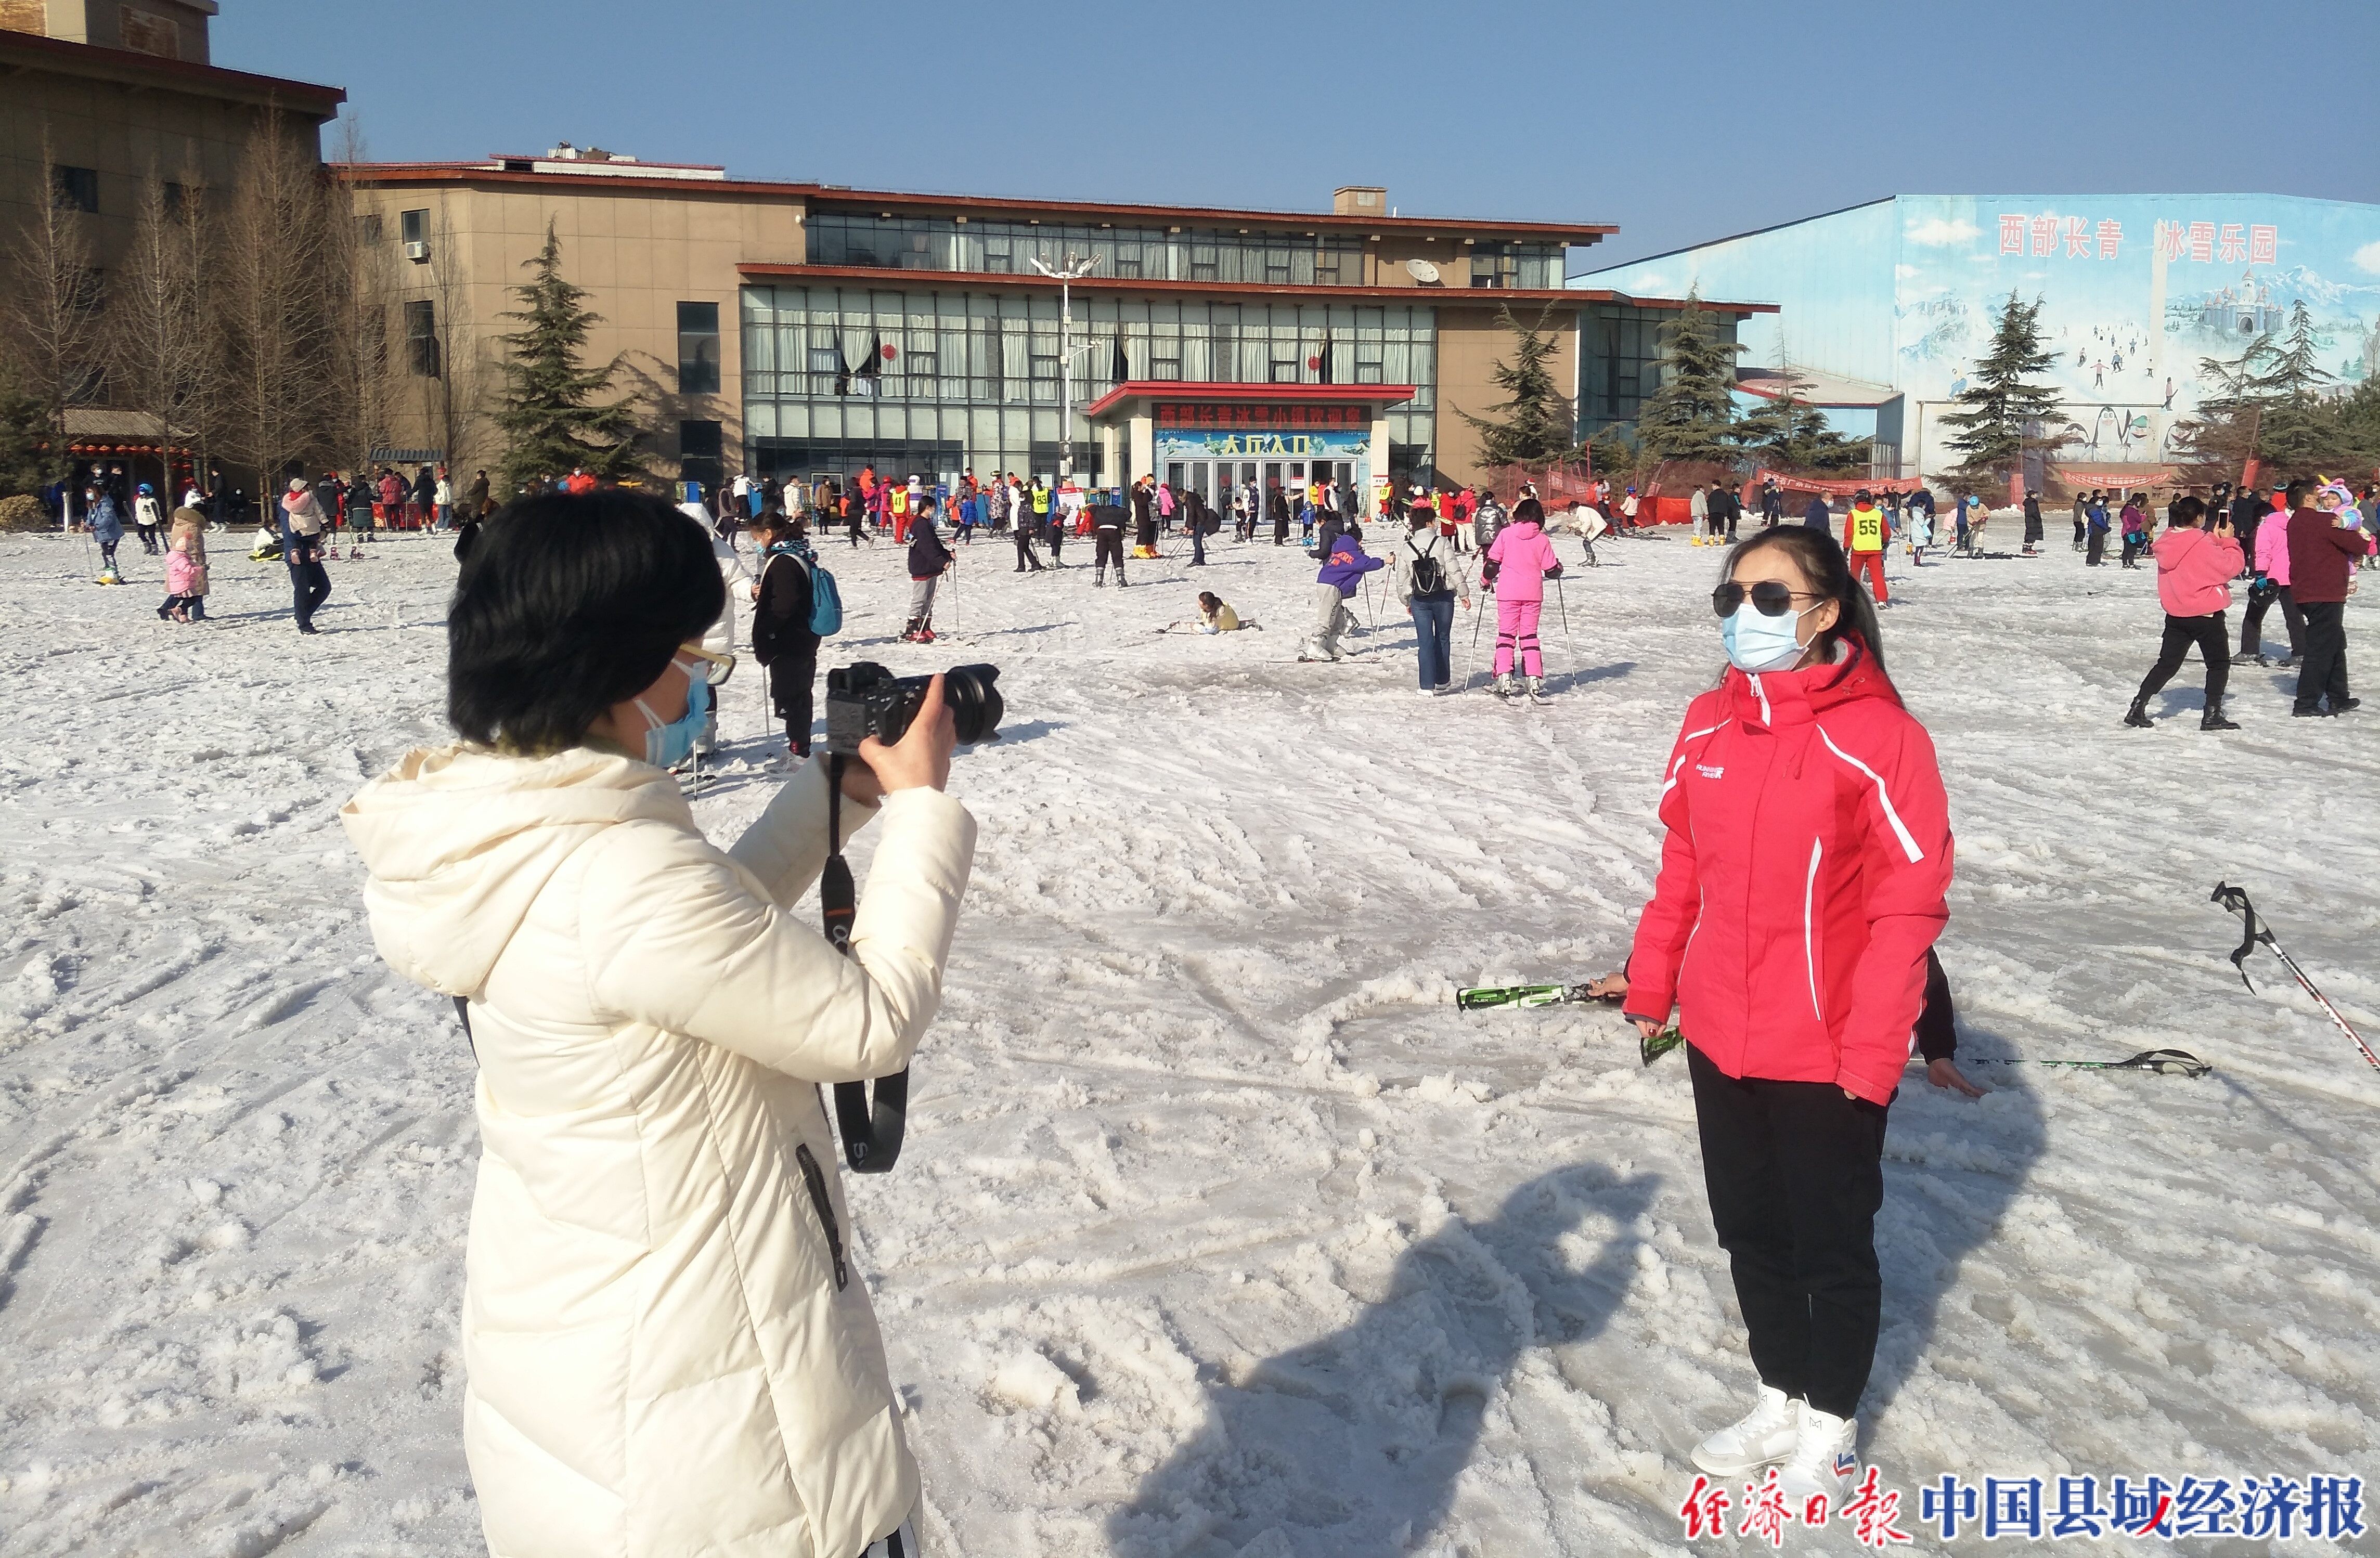 据了解,西部长青冰雪小镇是目前河北省首家,可以四季滑雪的大型冰雪